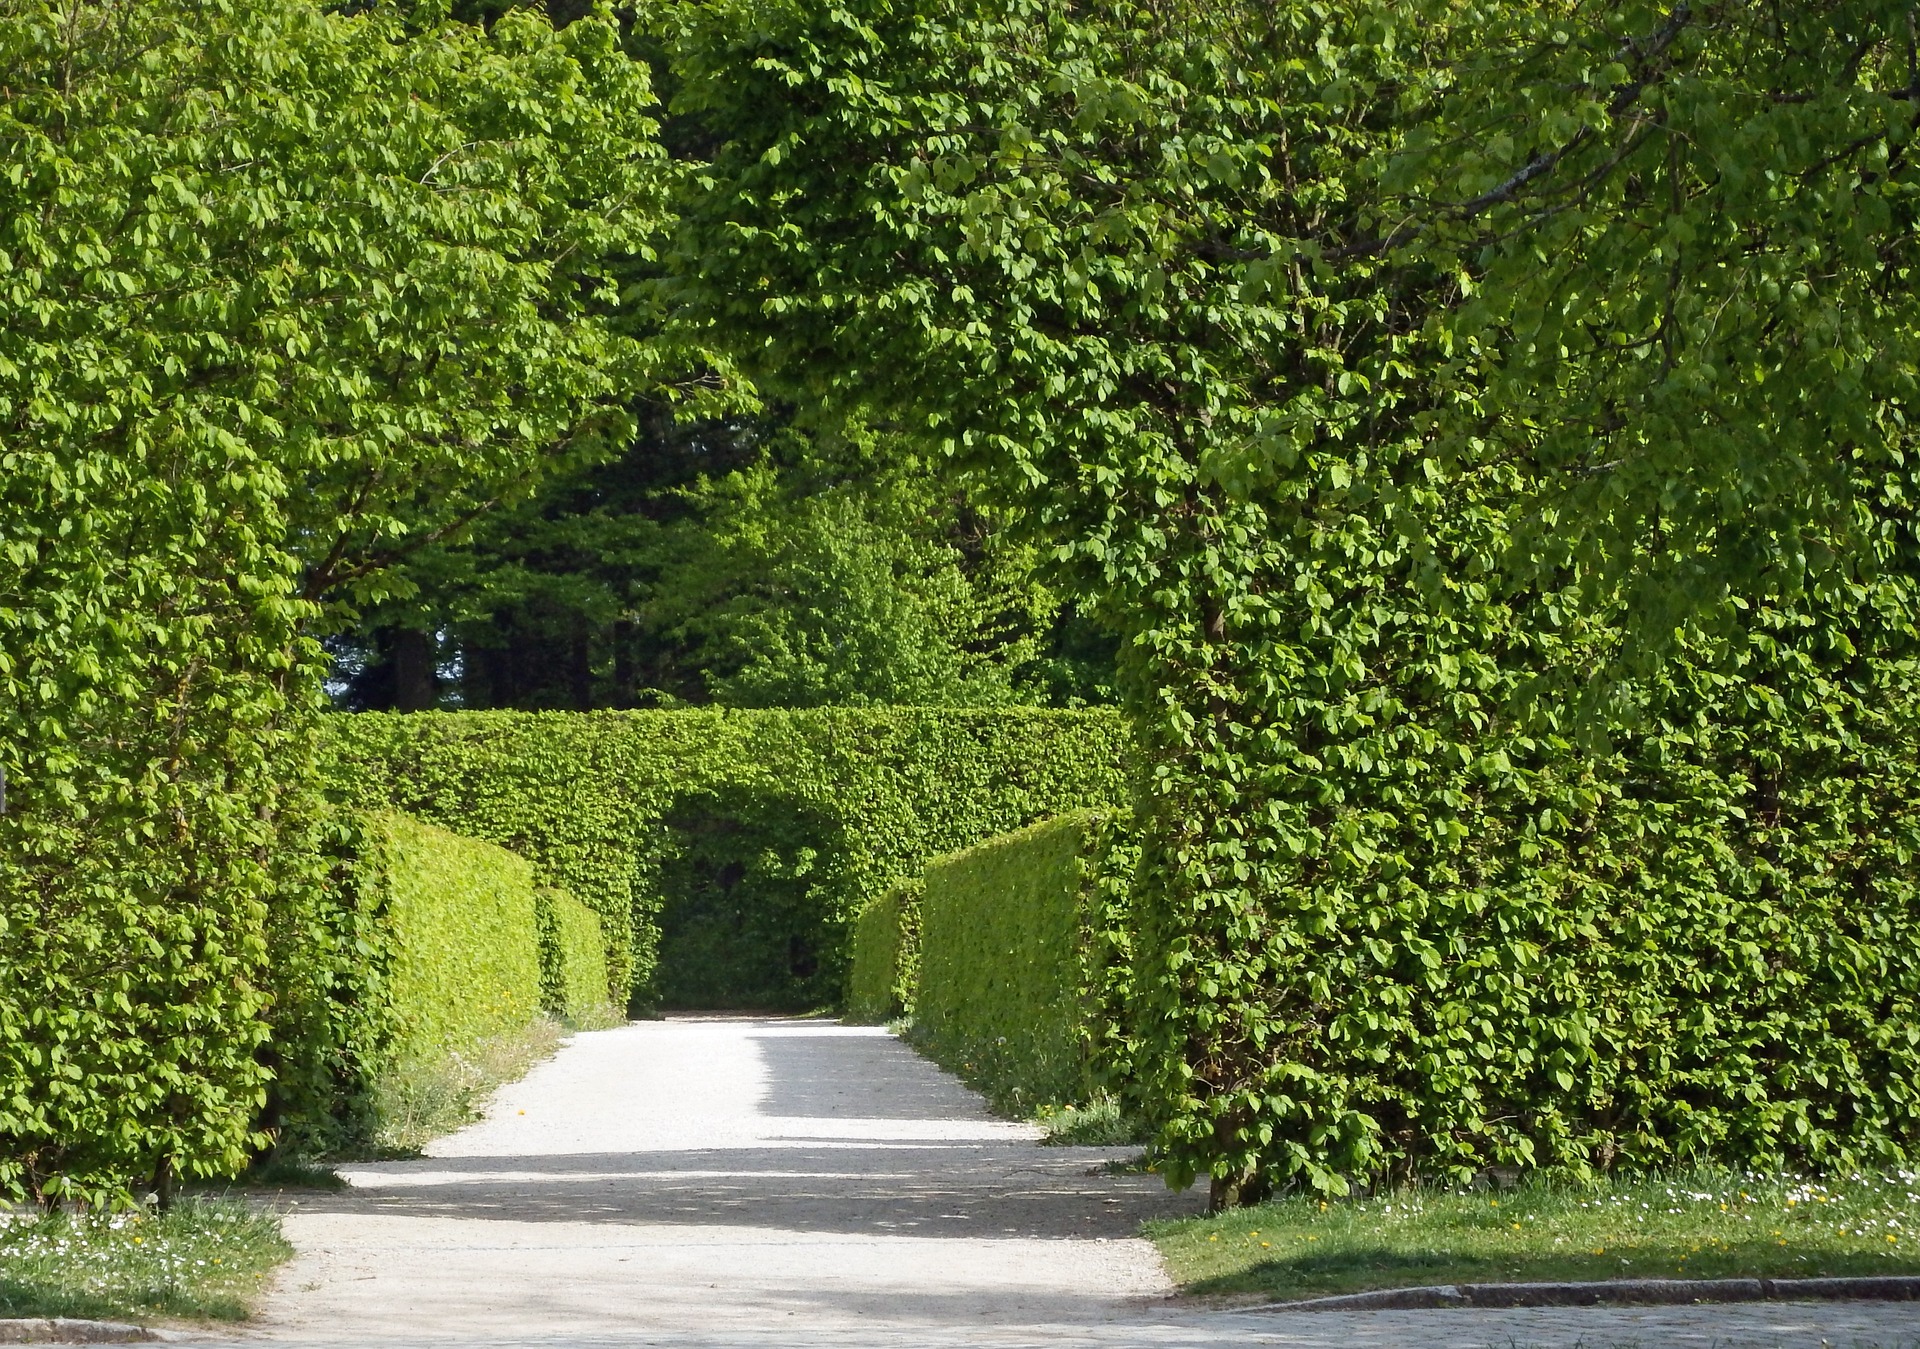 Tunel ogrodowy — jak można go wykorzystać, by robił wrażenie?